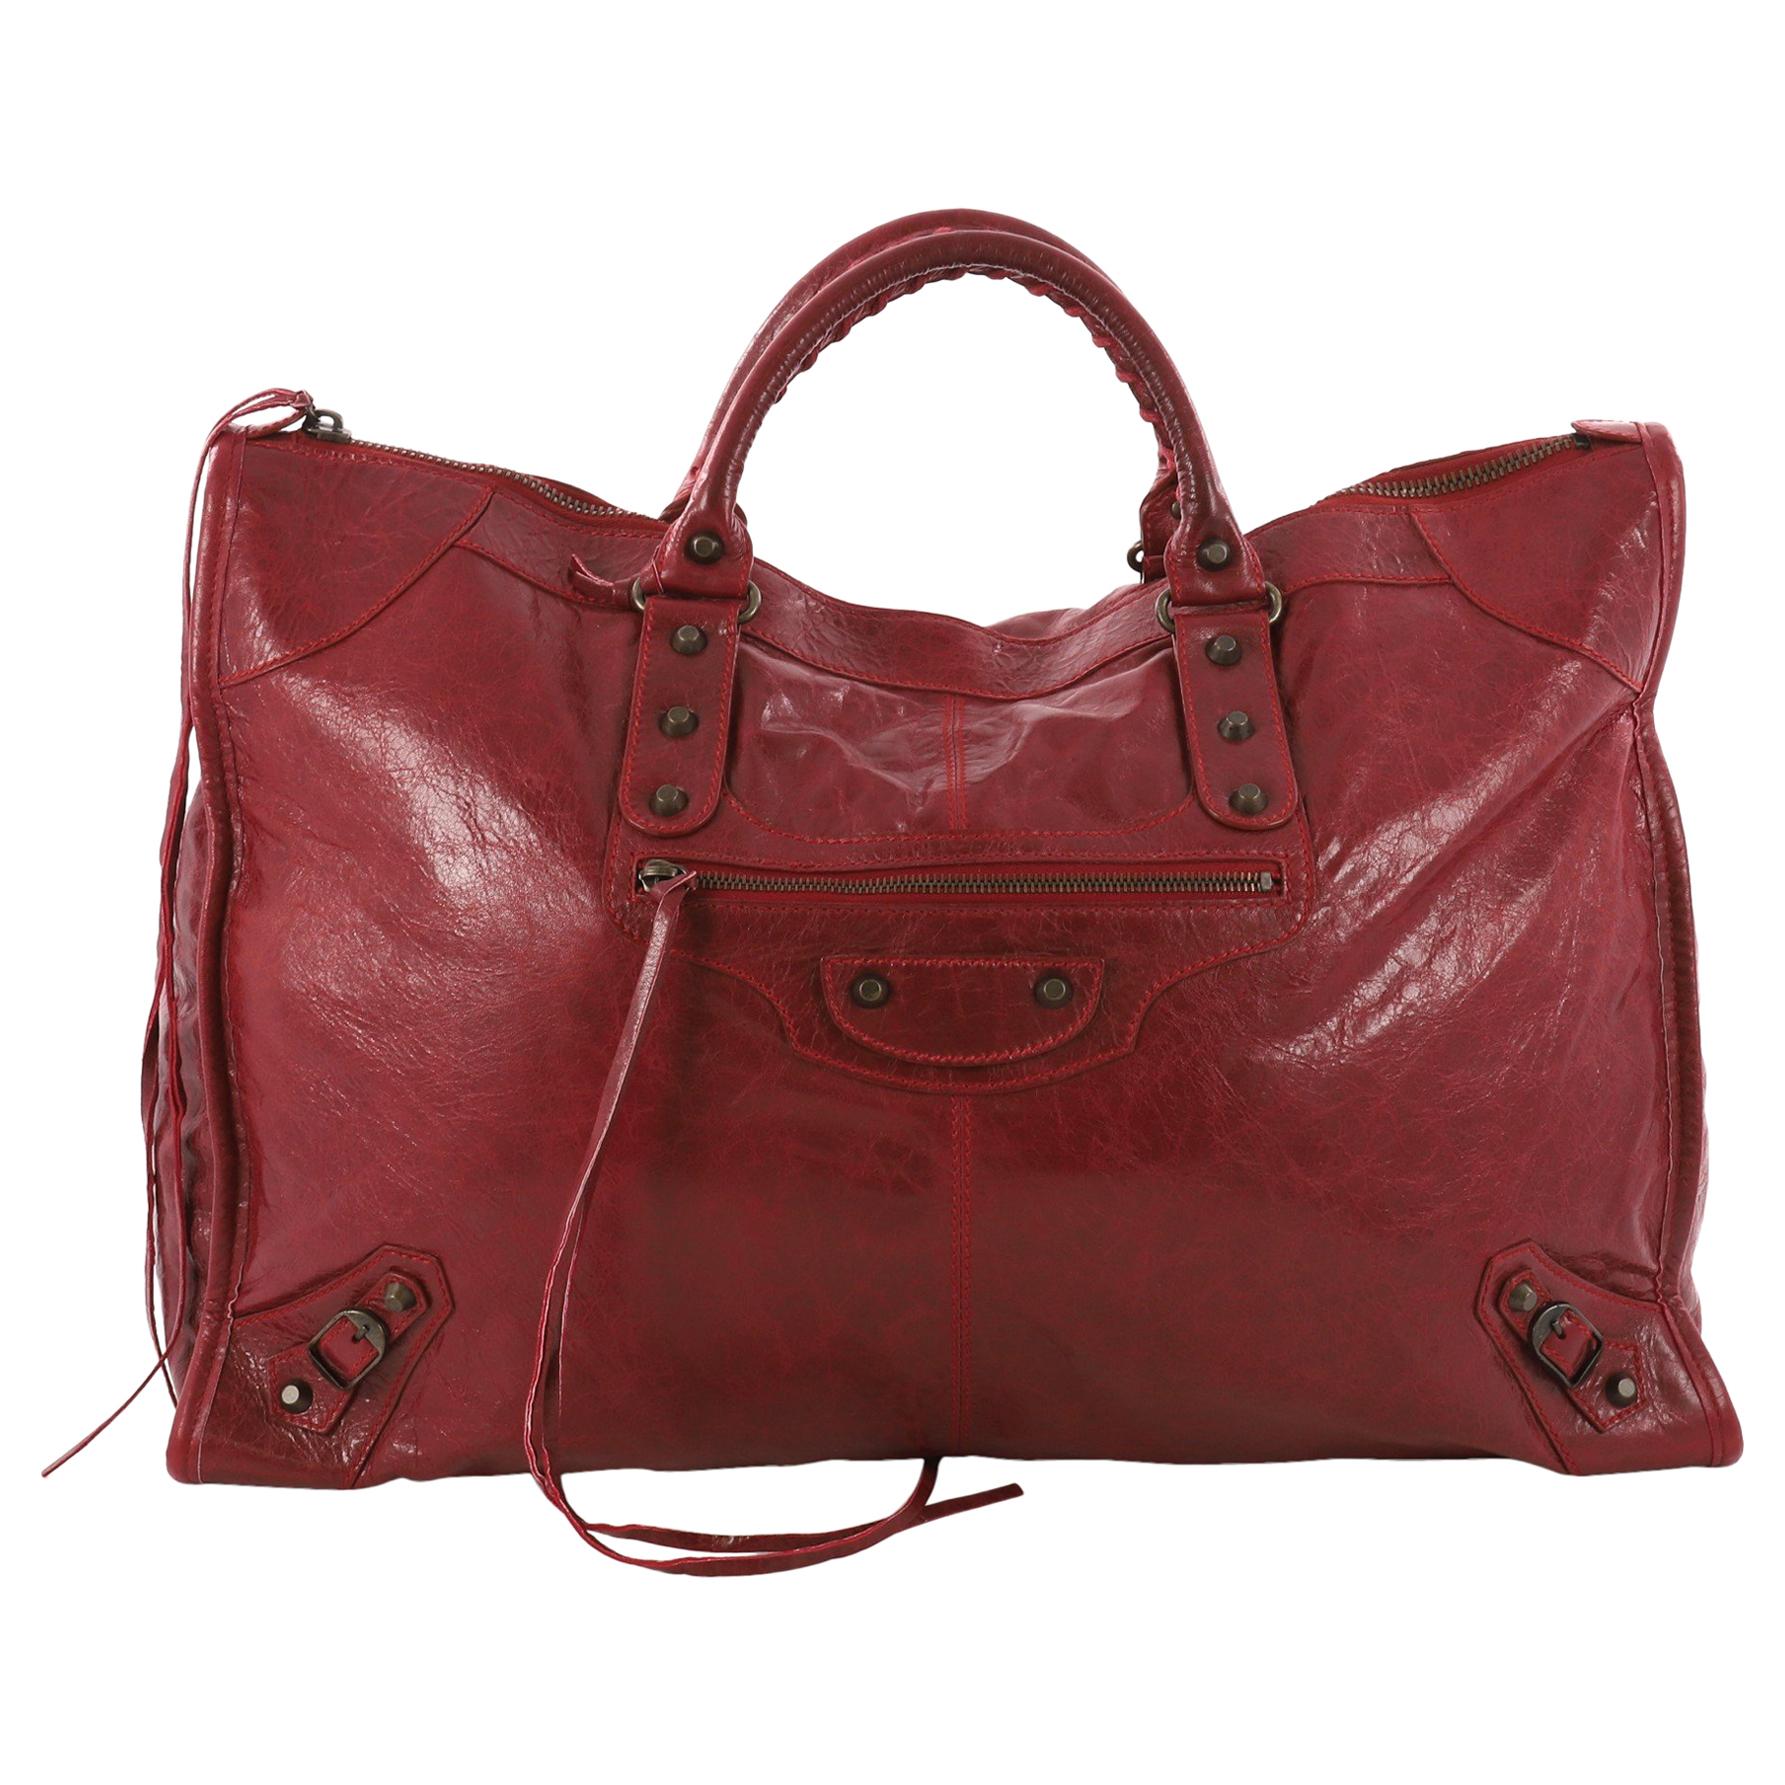 Balenciaga Weekender Classic Studs Handbag Leather 